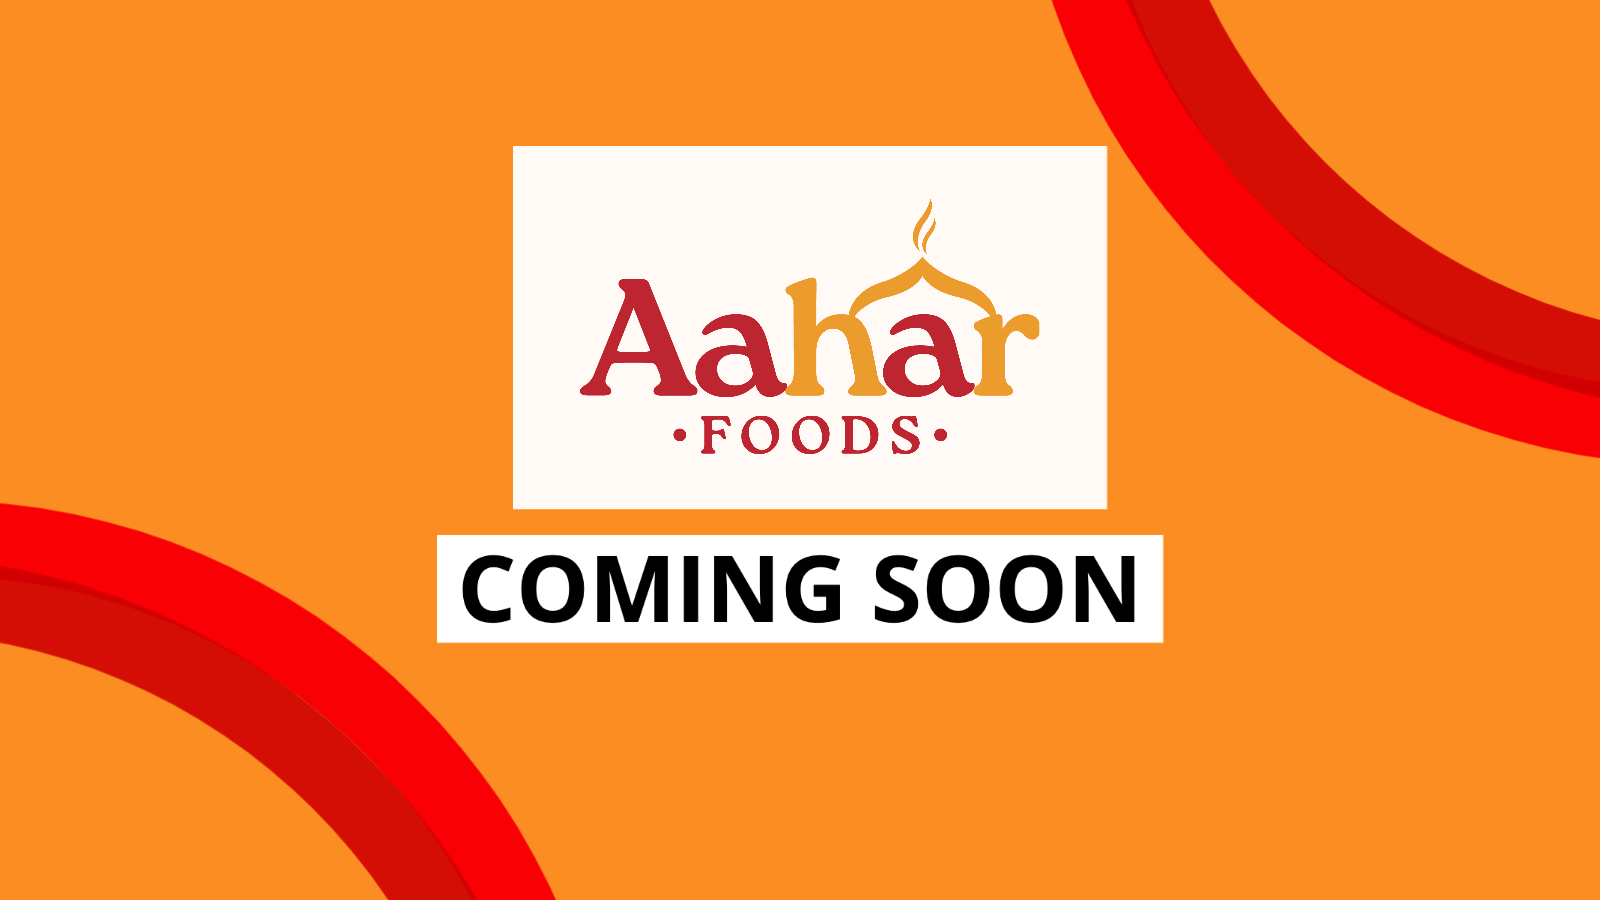 Aahar foods coming soon